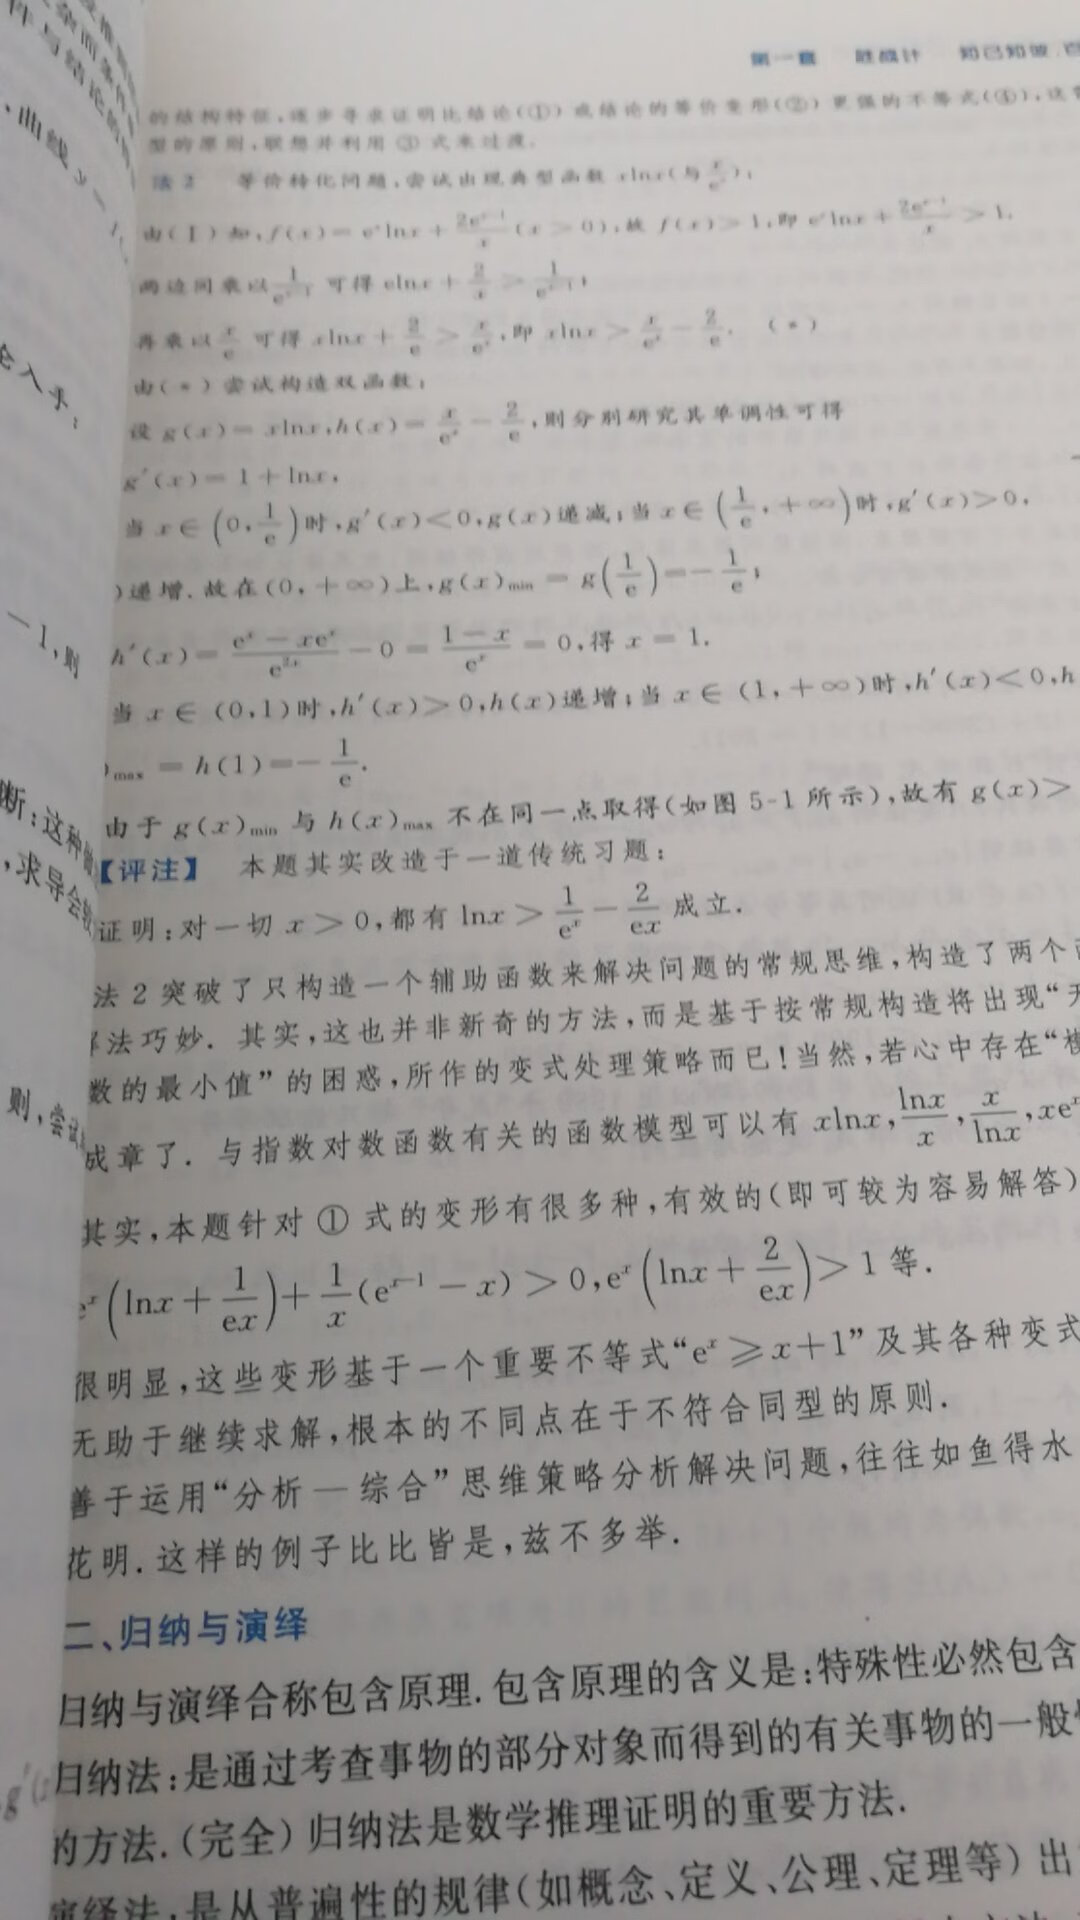 非常厚实的一本书，书的内容也不错，确实对提高数学解题有帮助。